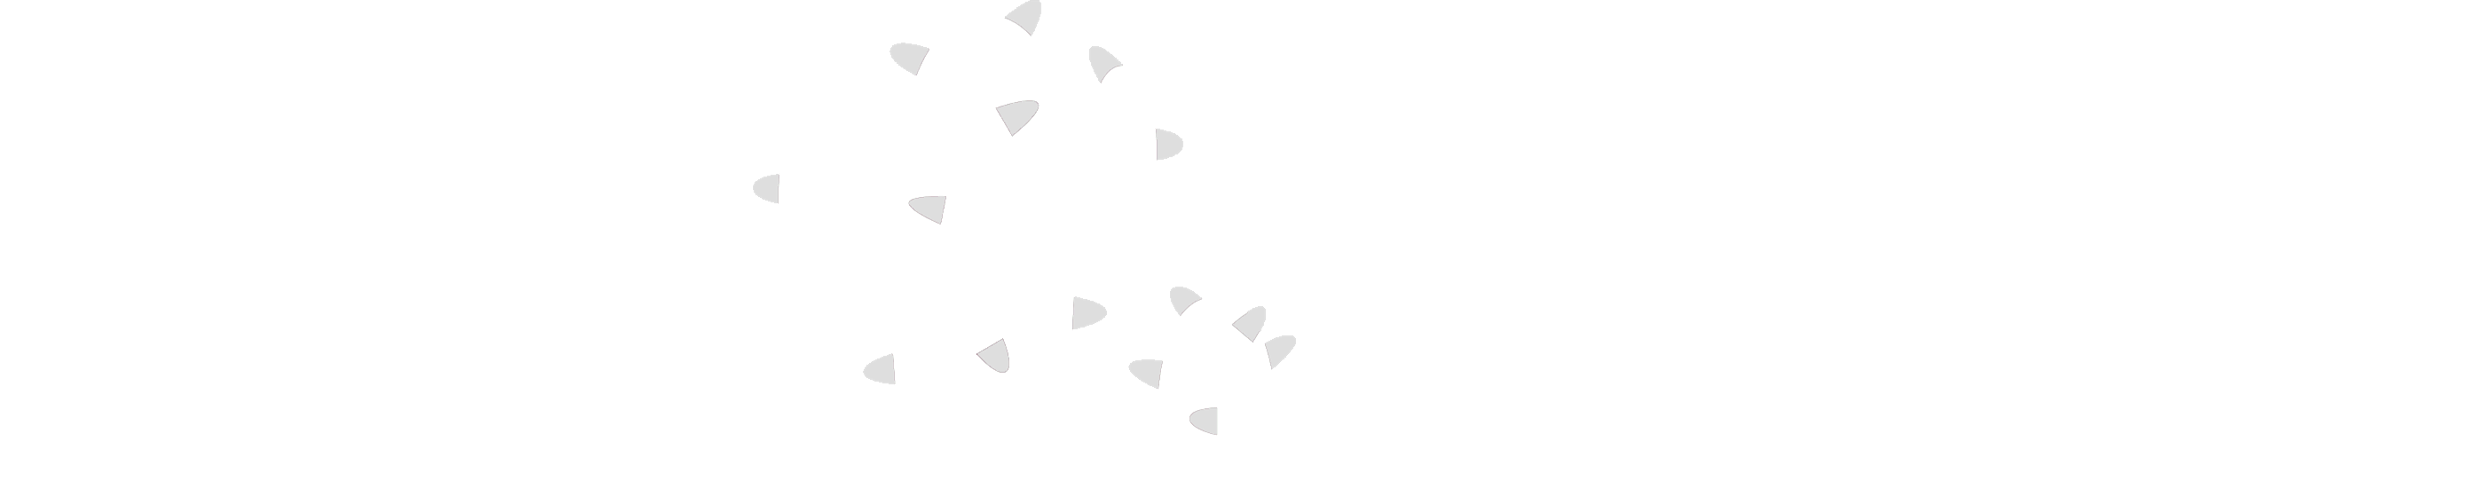 Cactus Builder logo